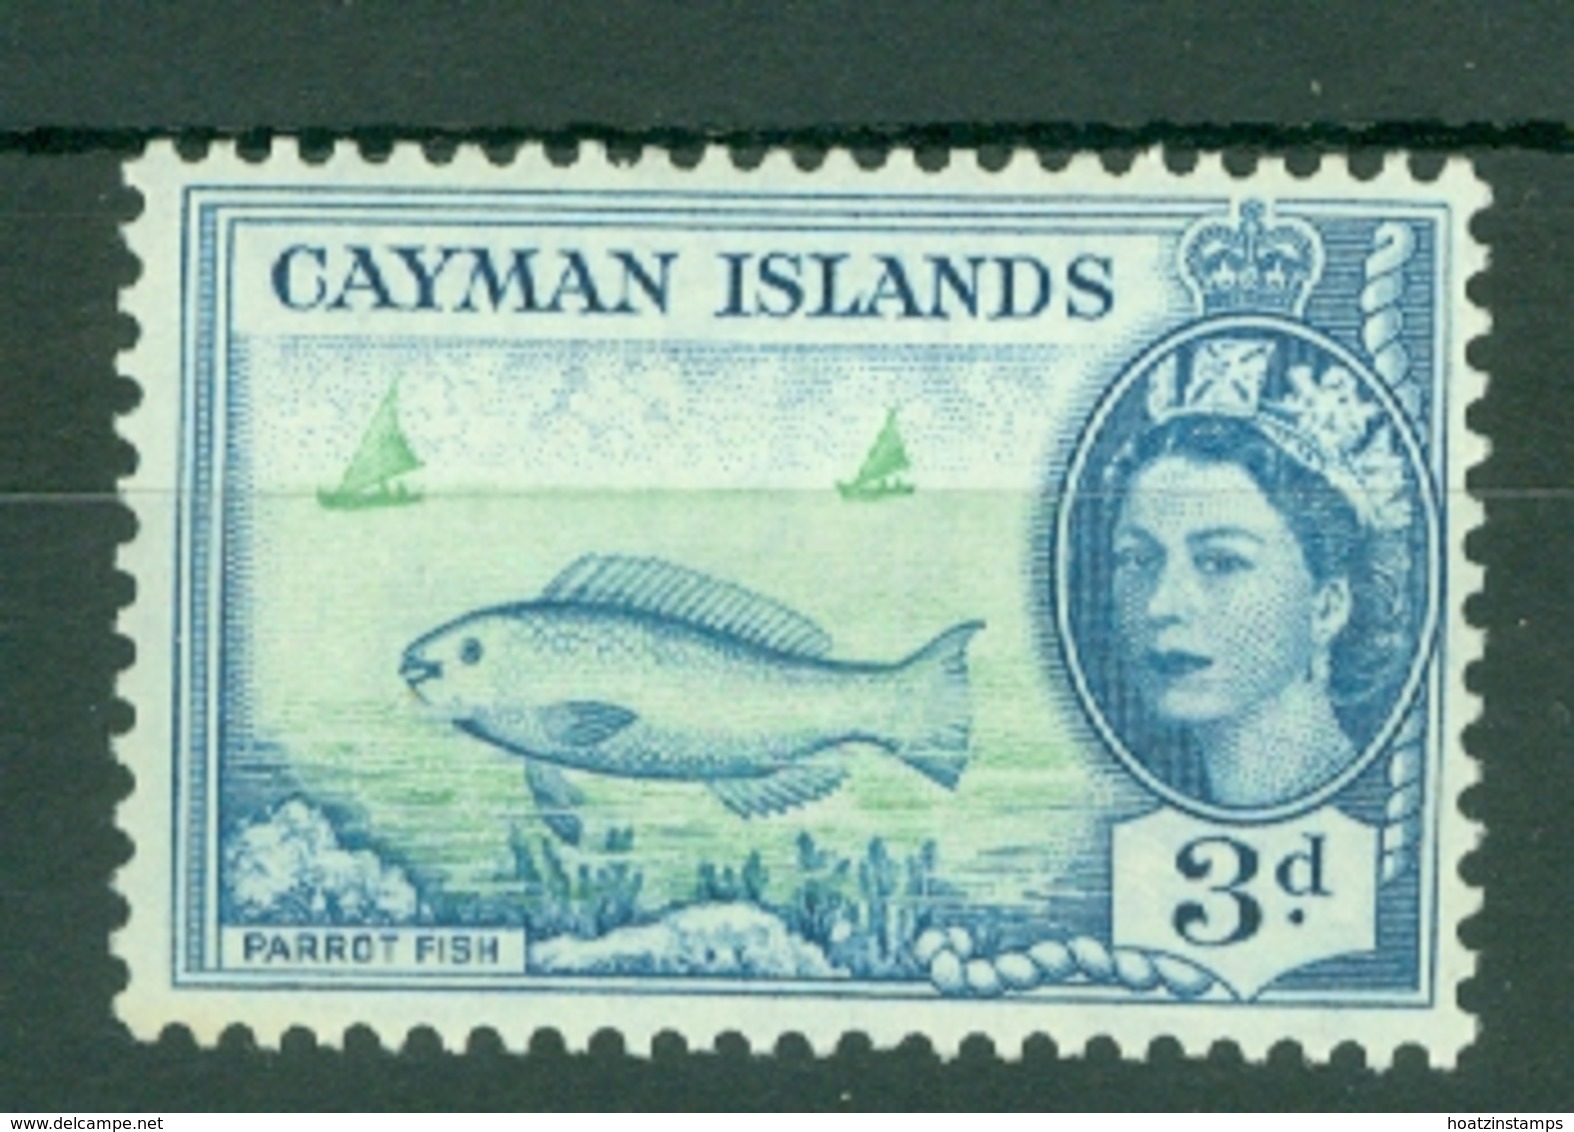 Cayman Islands: 1953/62   QE II - Pictorial   SG154   3d     MNH - Cayman Islands